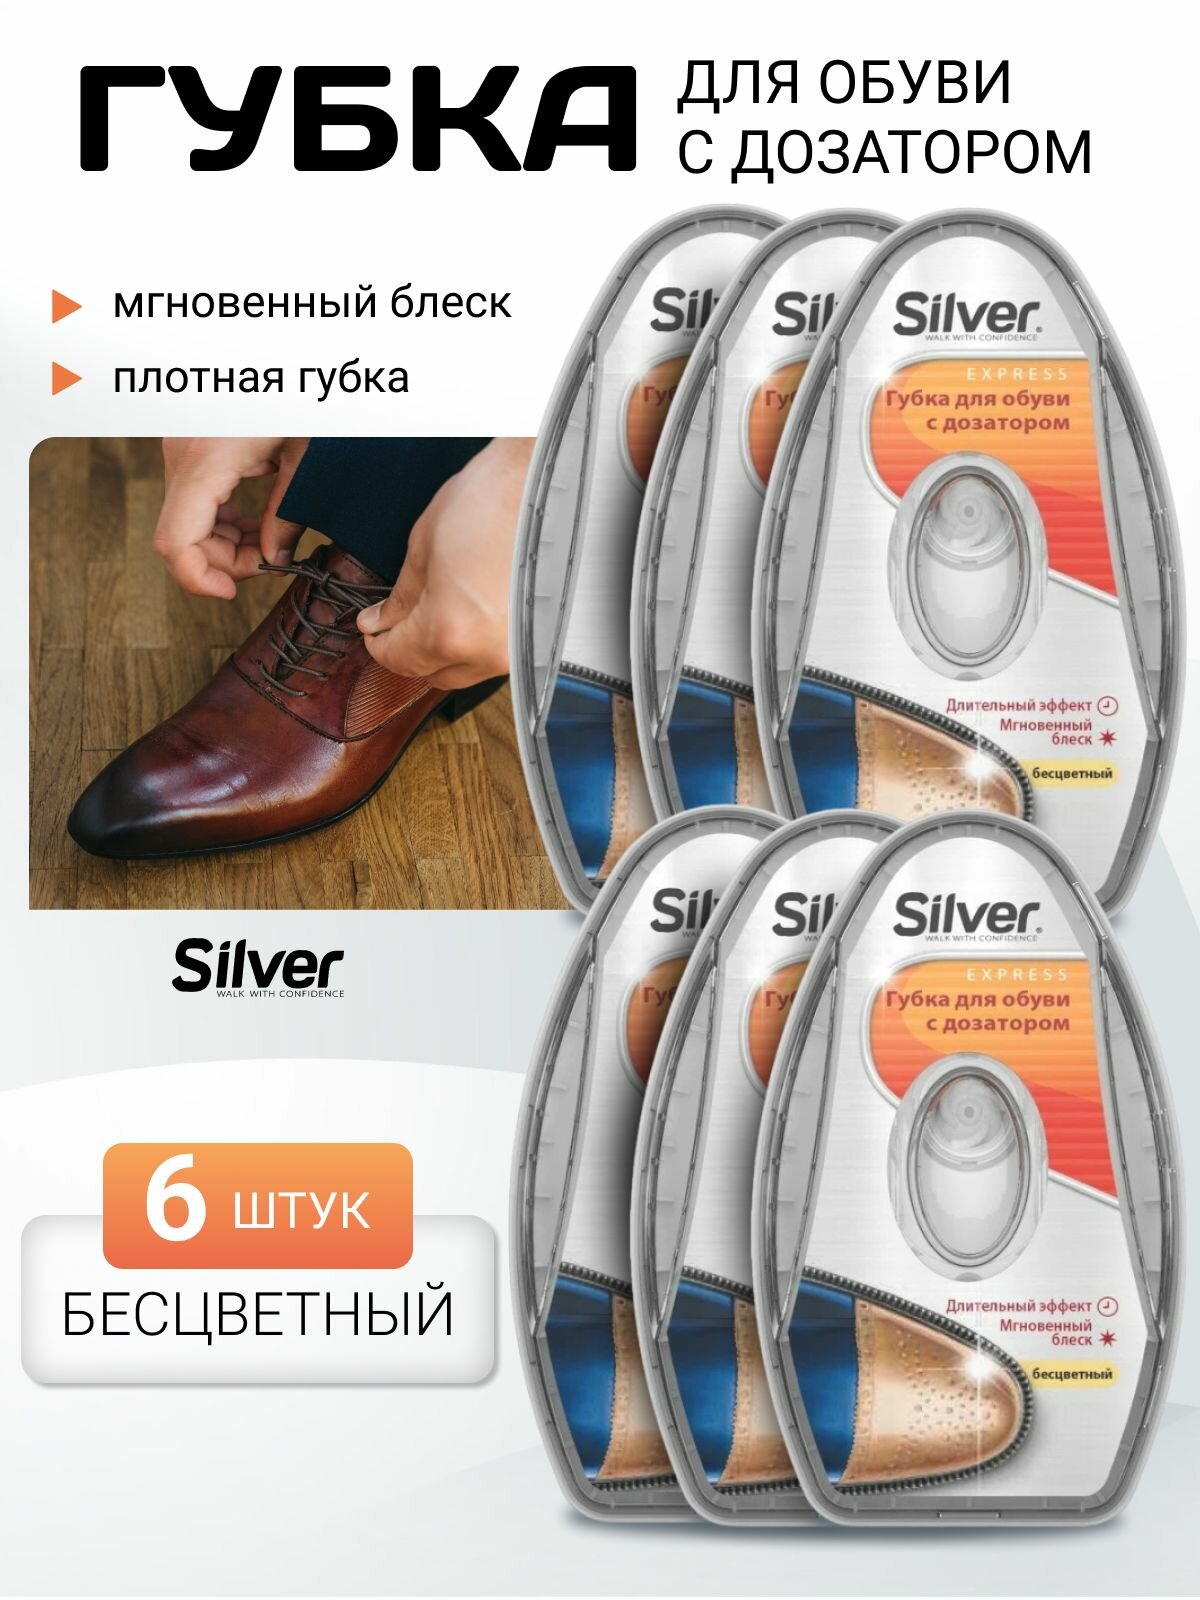 Губка для обуви с дозатором бесцветная Silver / Комплект для ухода за обувью 6 шт